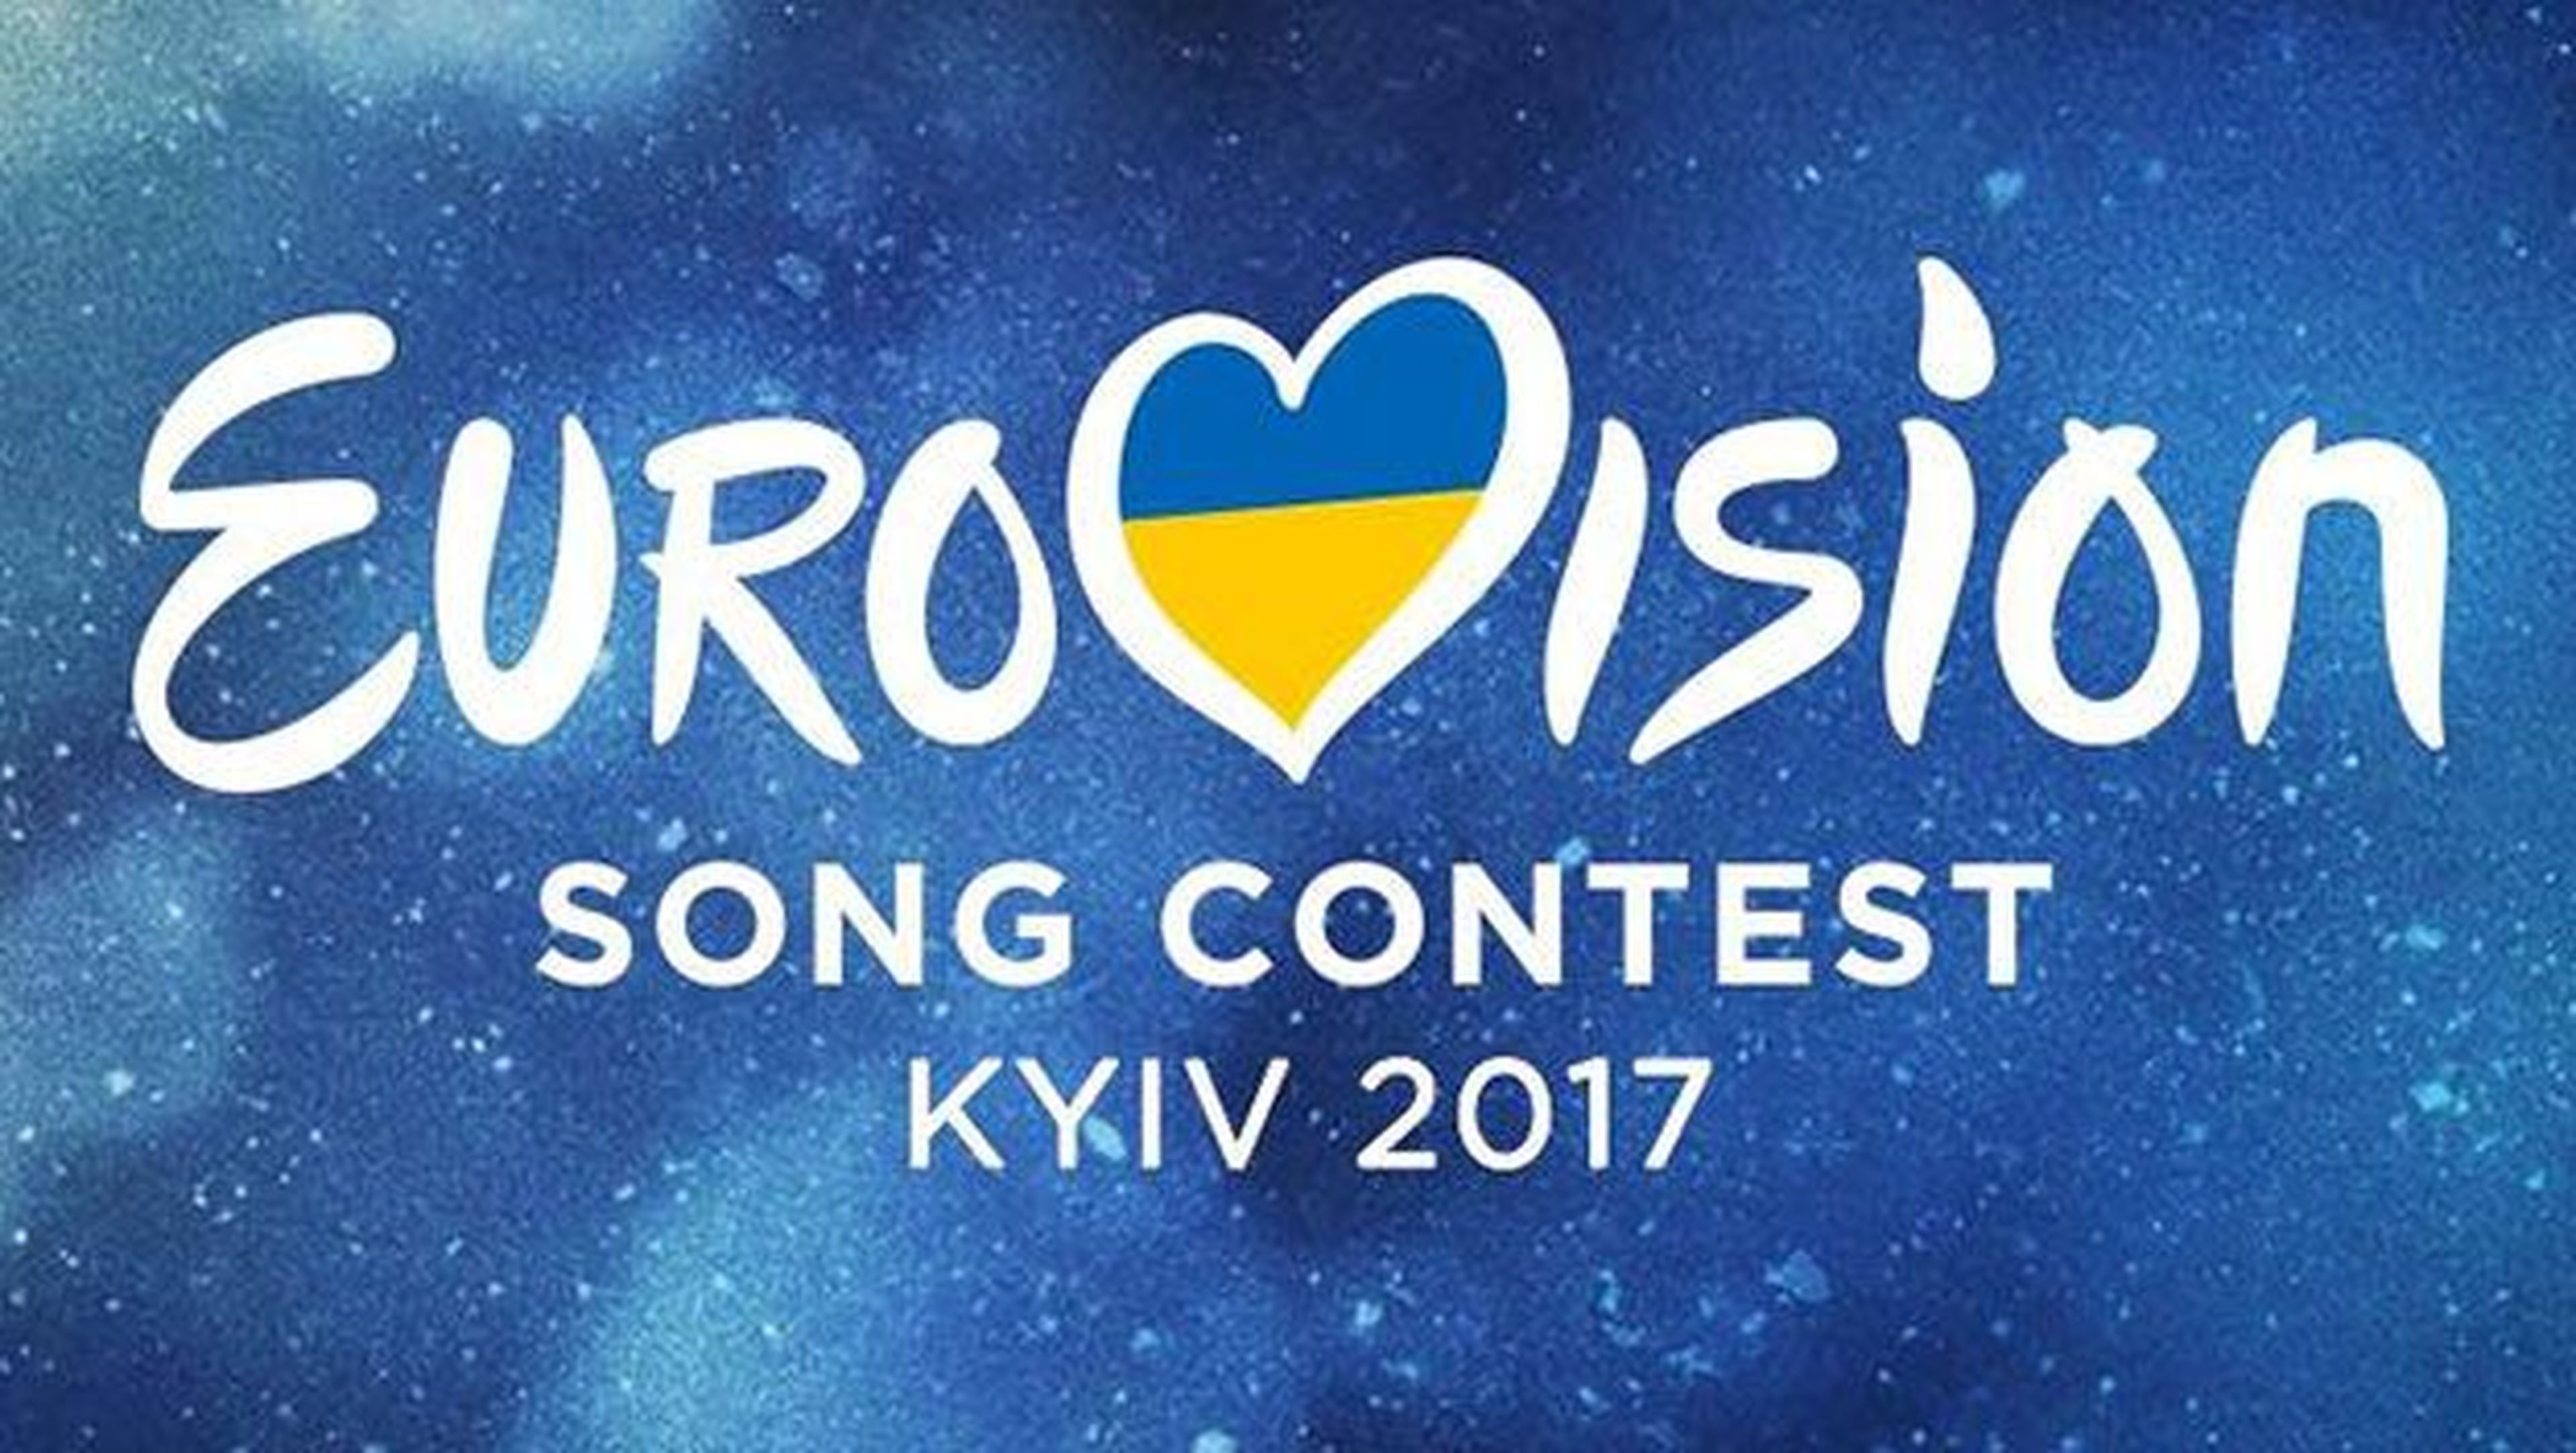 Qué cantantes son favoritos para ganar Eurovisión 2017.